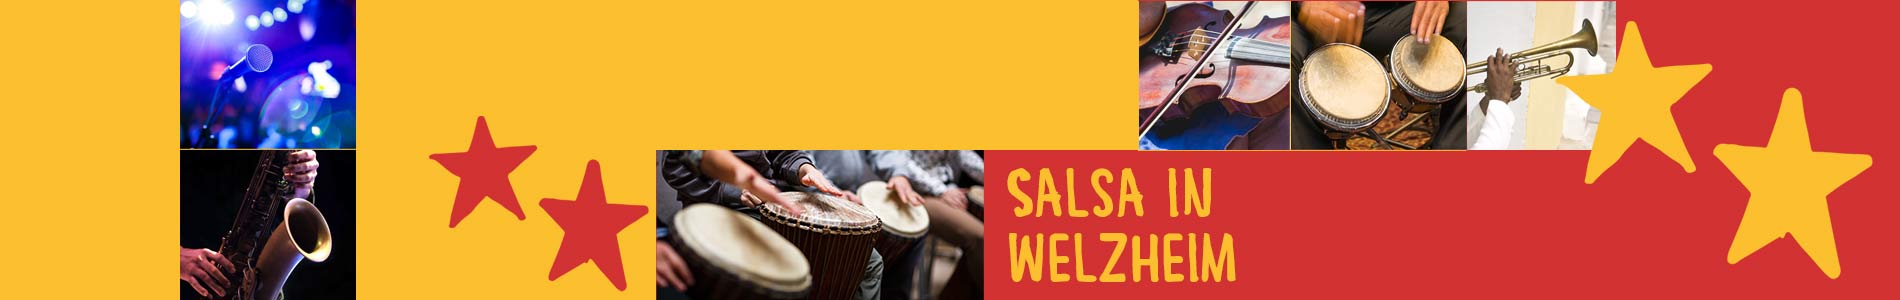 Salsa in Welzheim – Salsa lernen und tanzen, Tanzkurse, Partys, Veranstaltungen